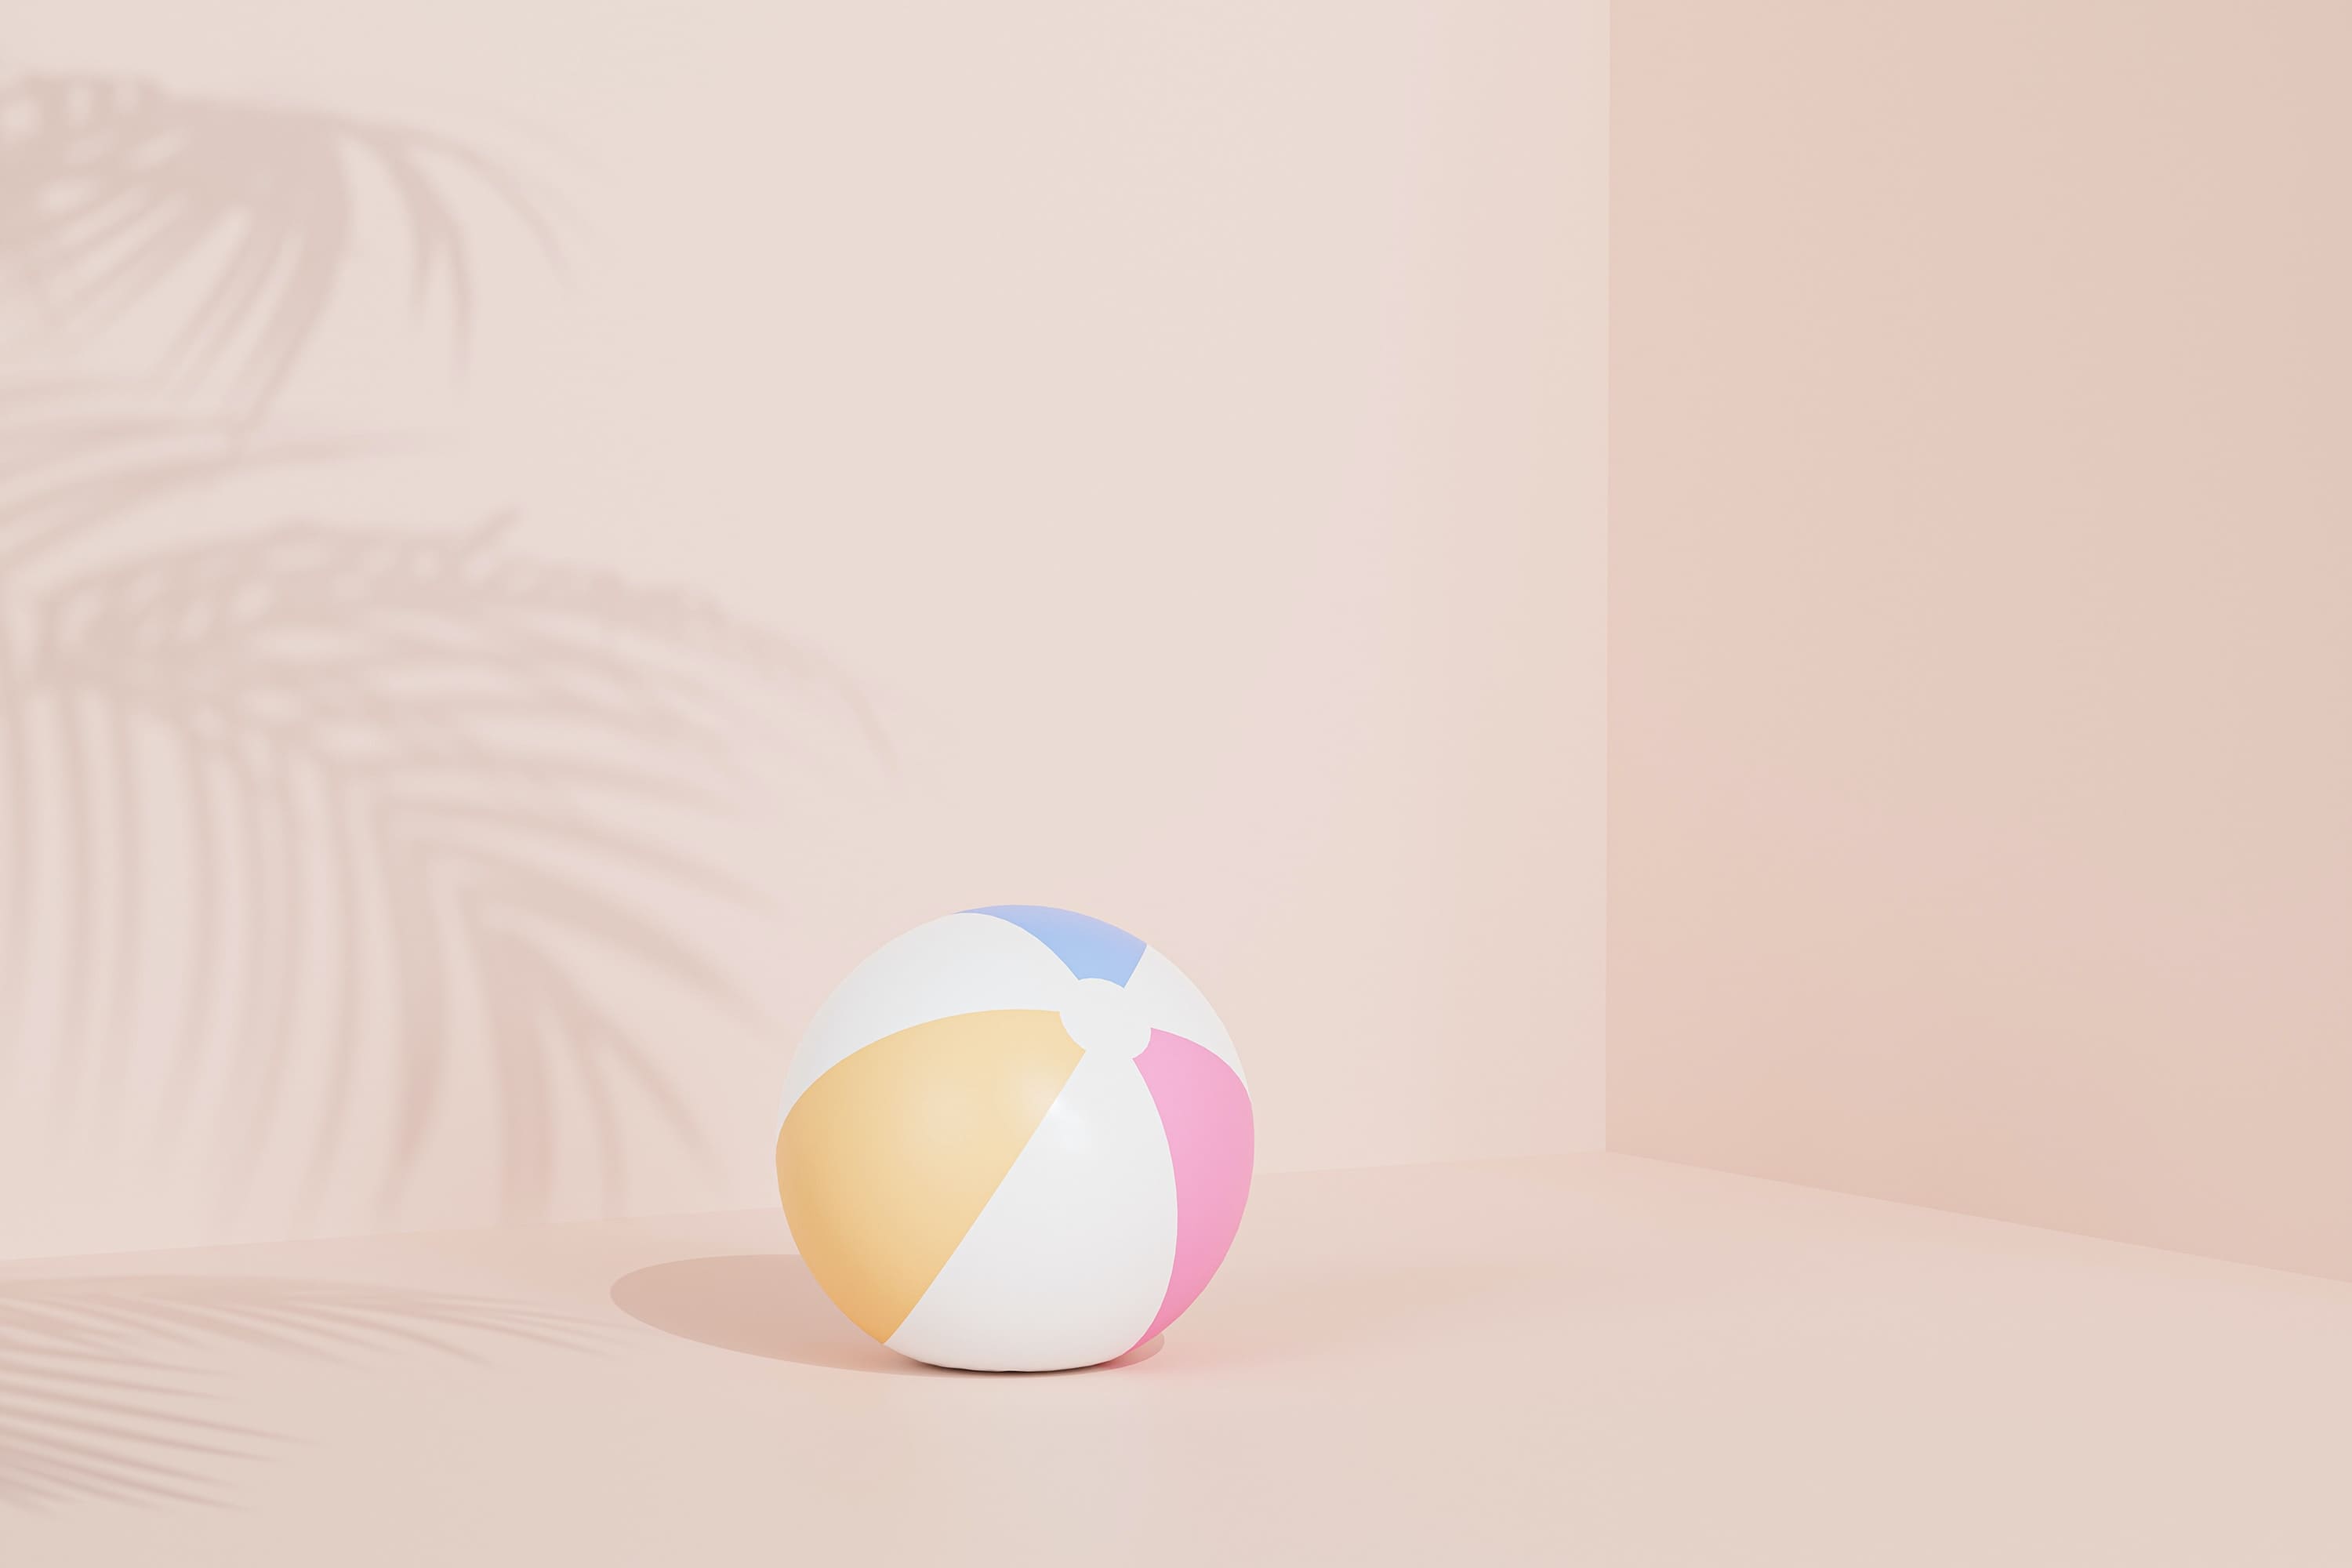 Immagine generata dall'intelligenza artificiale di un pallone da spiaggia